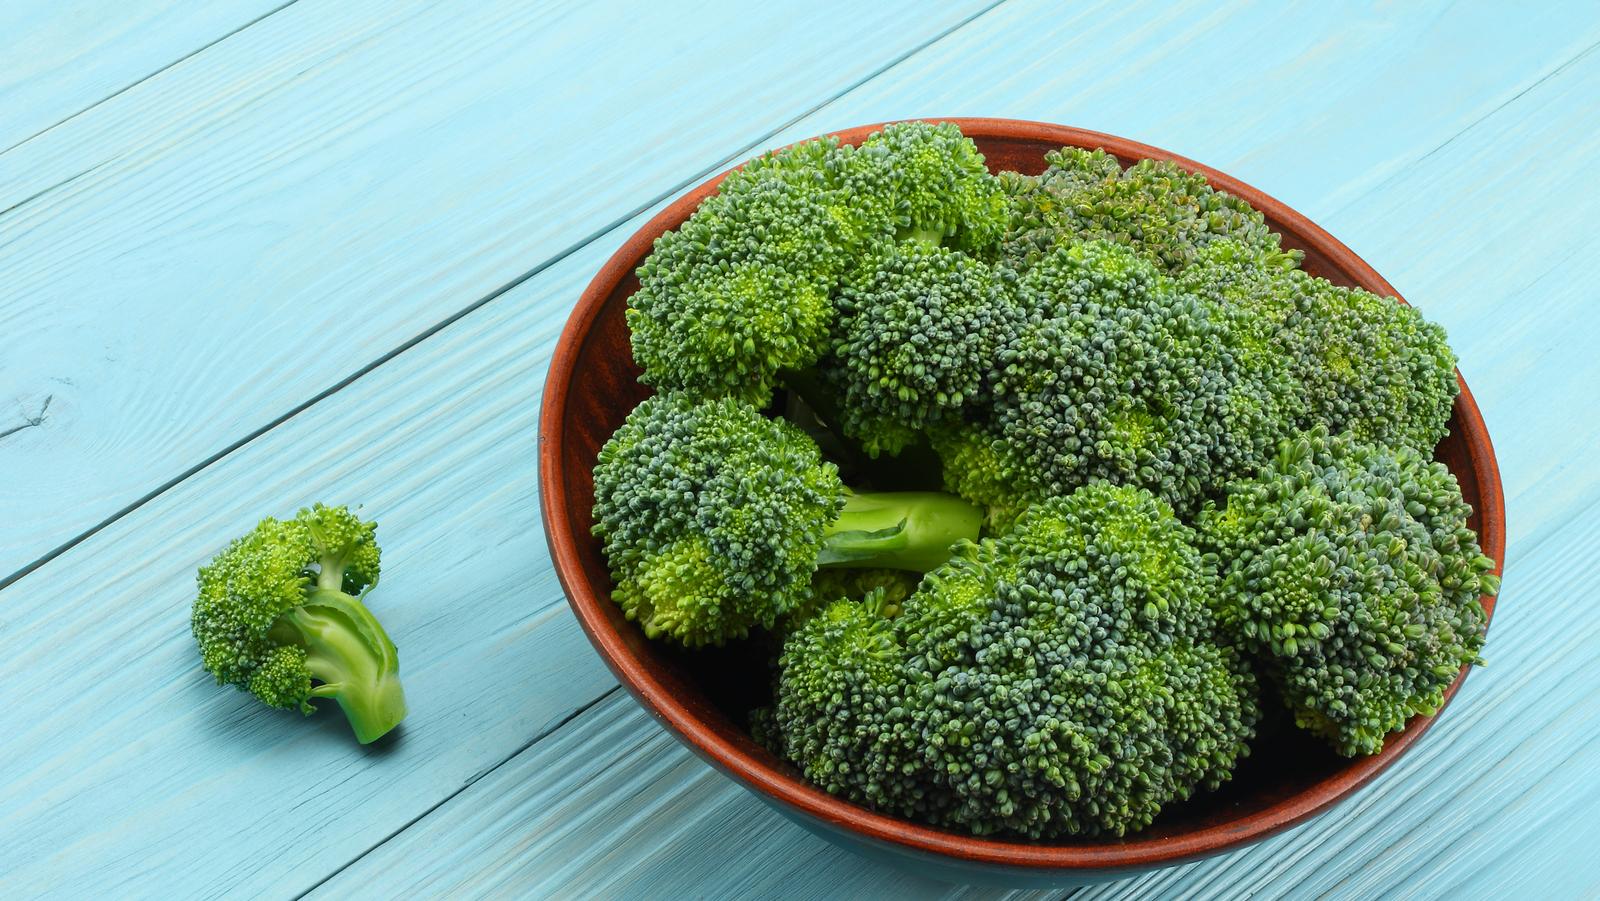 Brokkoli für die Gesundheit, das Superlebensmittel für den Alltag